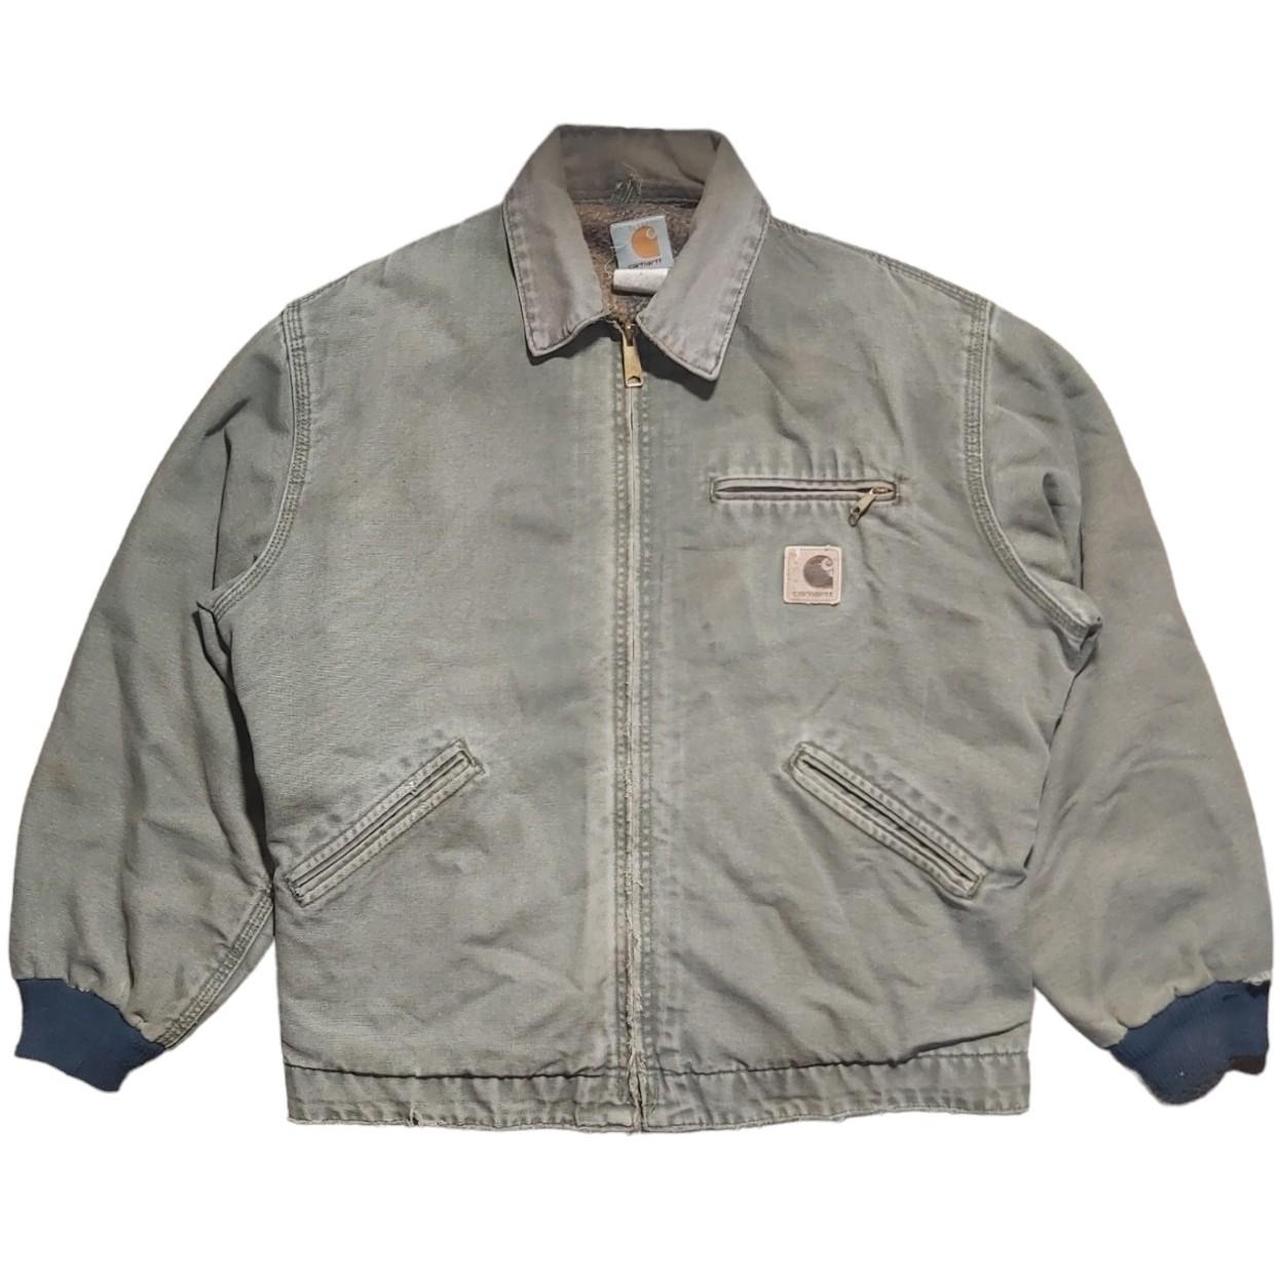 Vintage Carhartt Detroit J76 Blanket lined jacket... - Depop